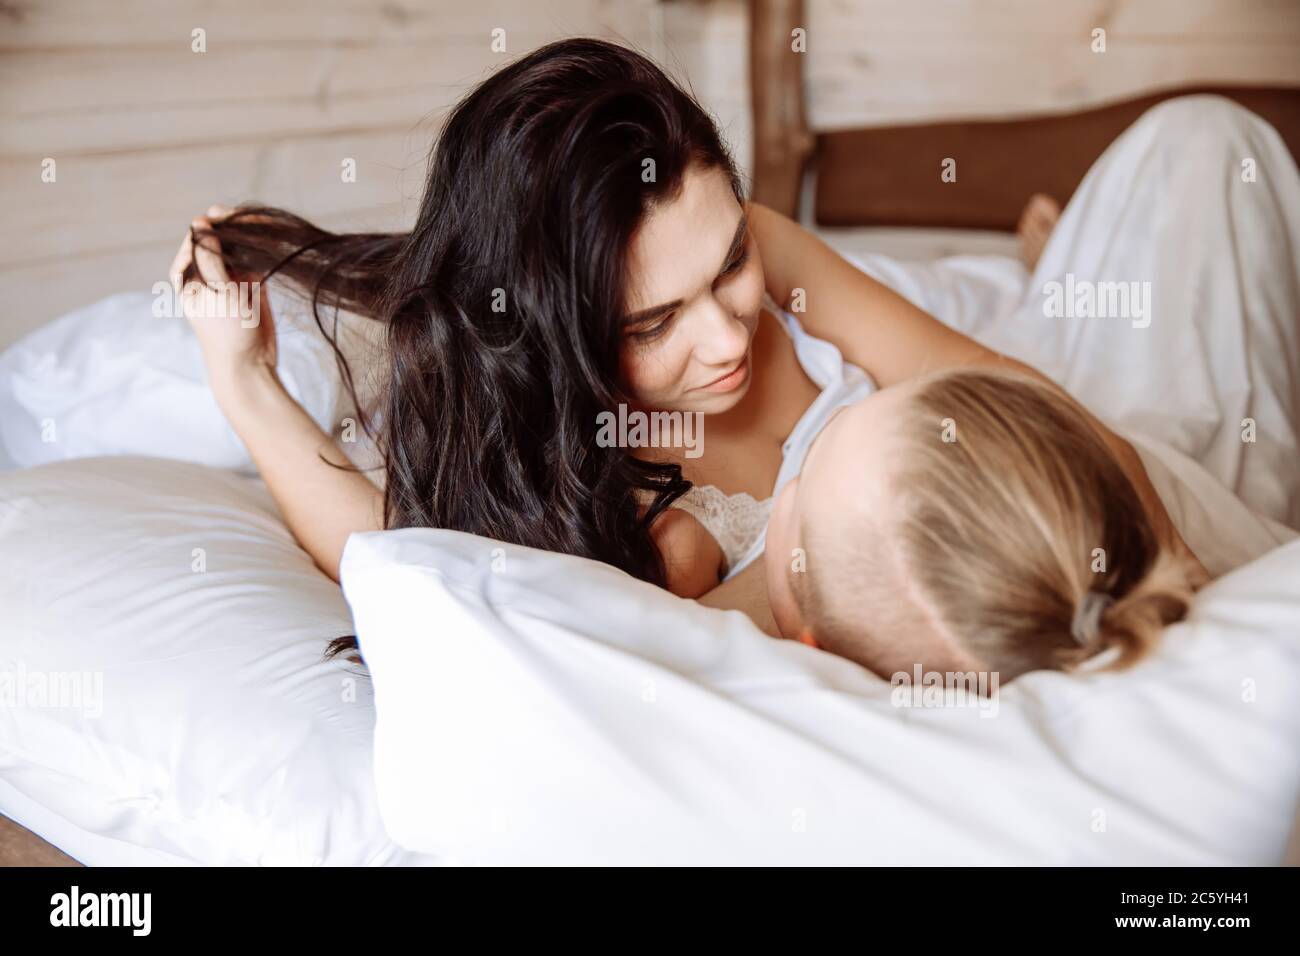 Ein junger Mann und eine junge Frau sonnen sich im Bett zusammen. Sie liegen unter weißen Laken. Ein liebevolles Paar wachte gerade auf. Stockfoto